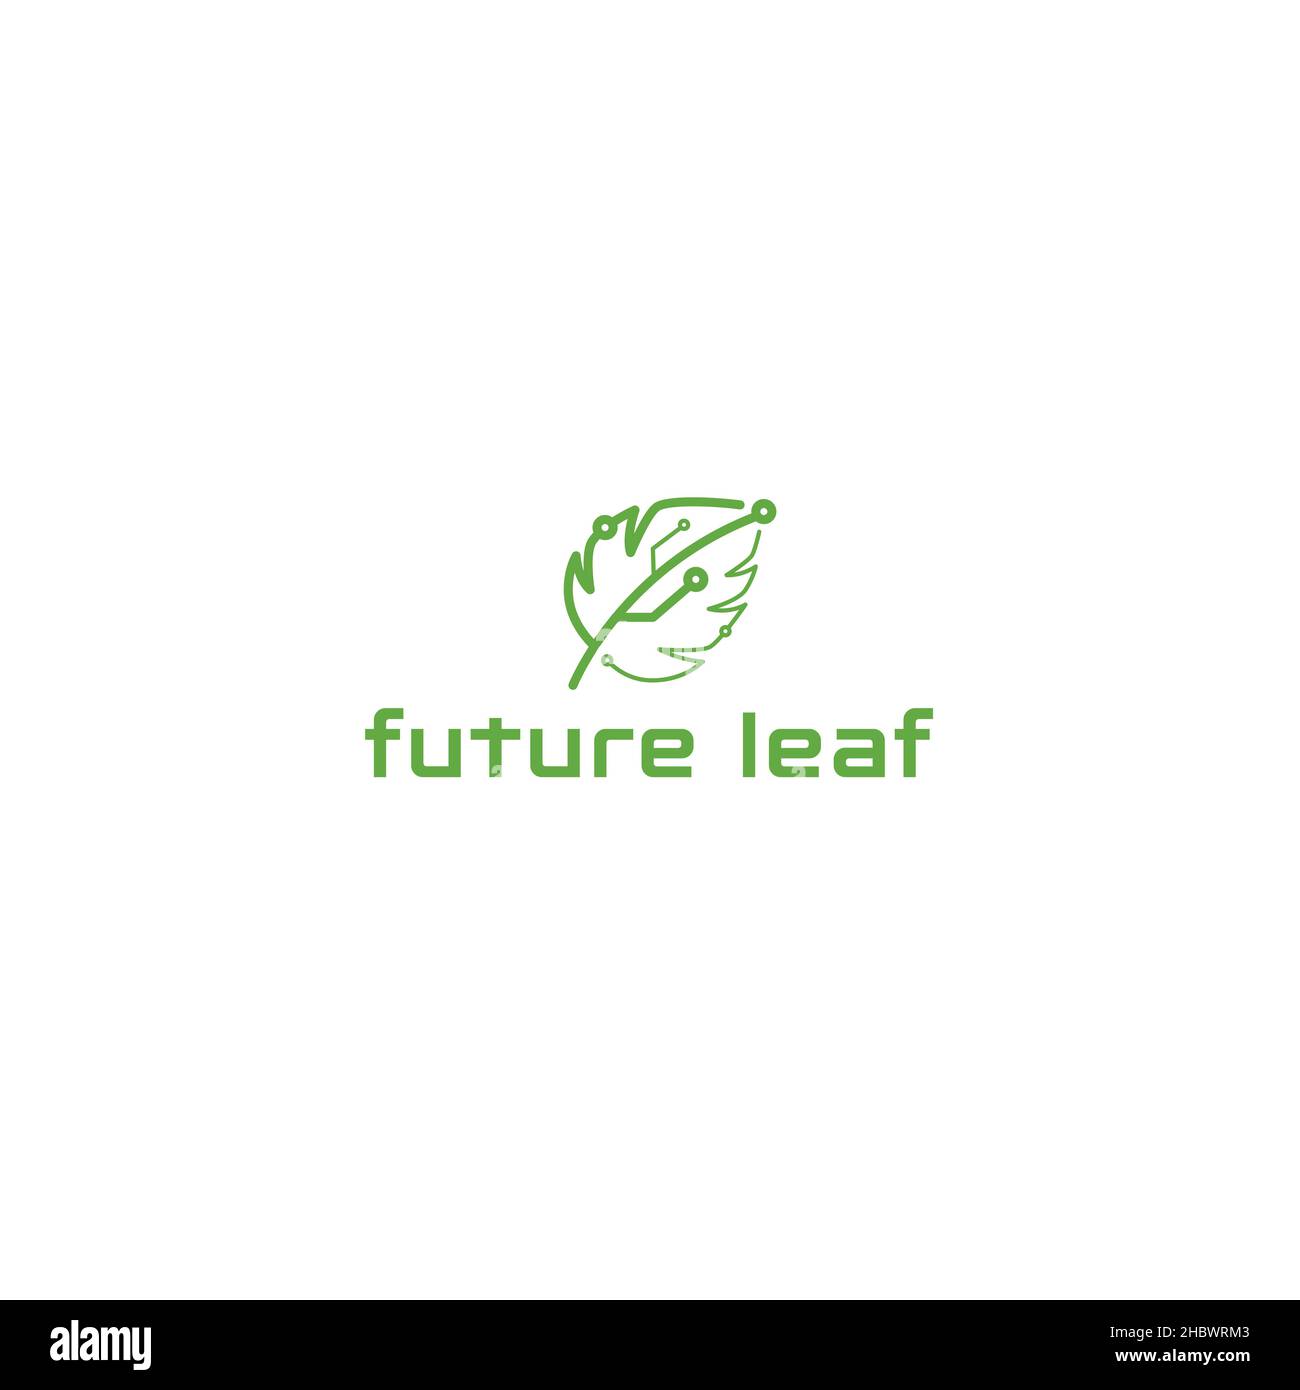 Design minimaliste et plat du logo de la technologie future Leaf Illustration de Vecteur